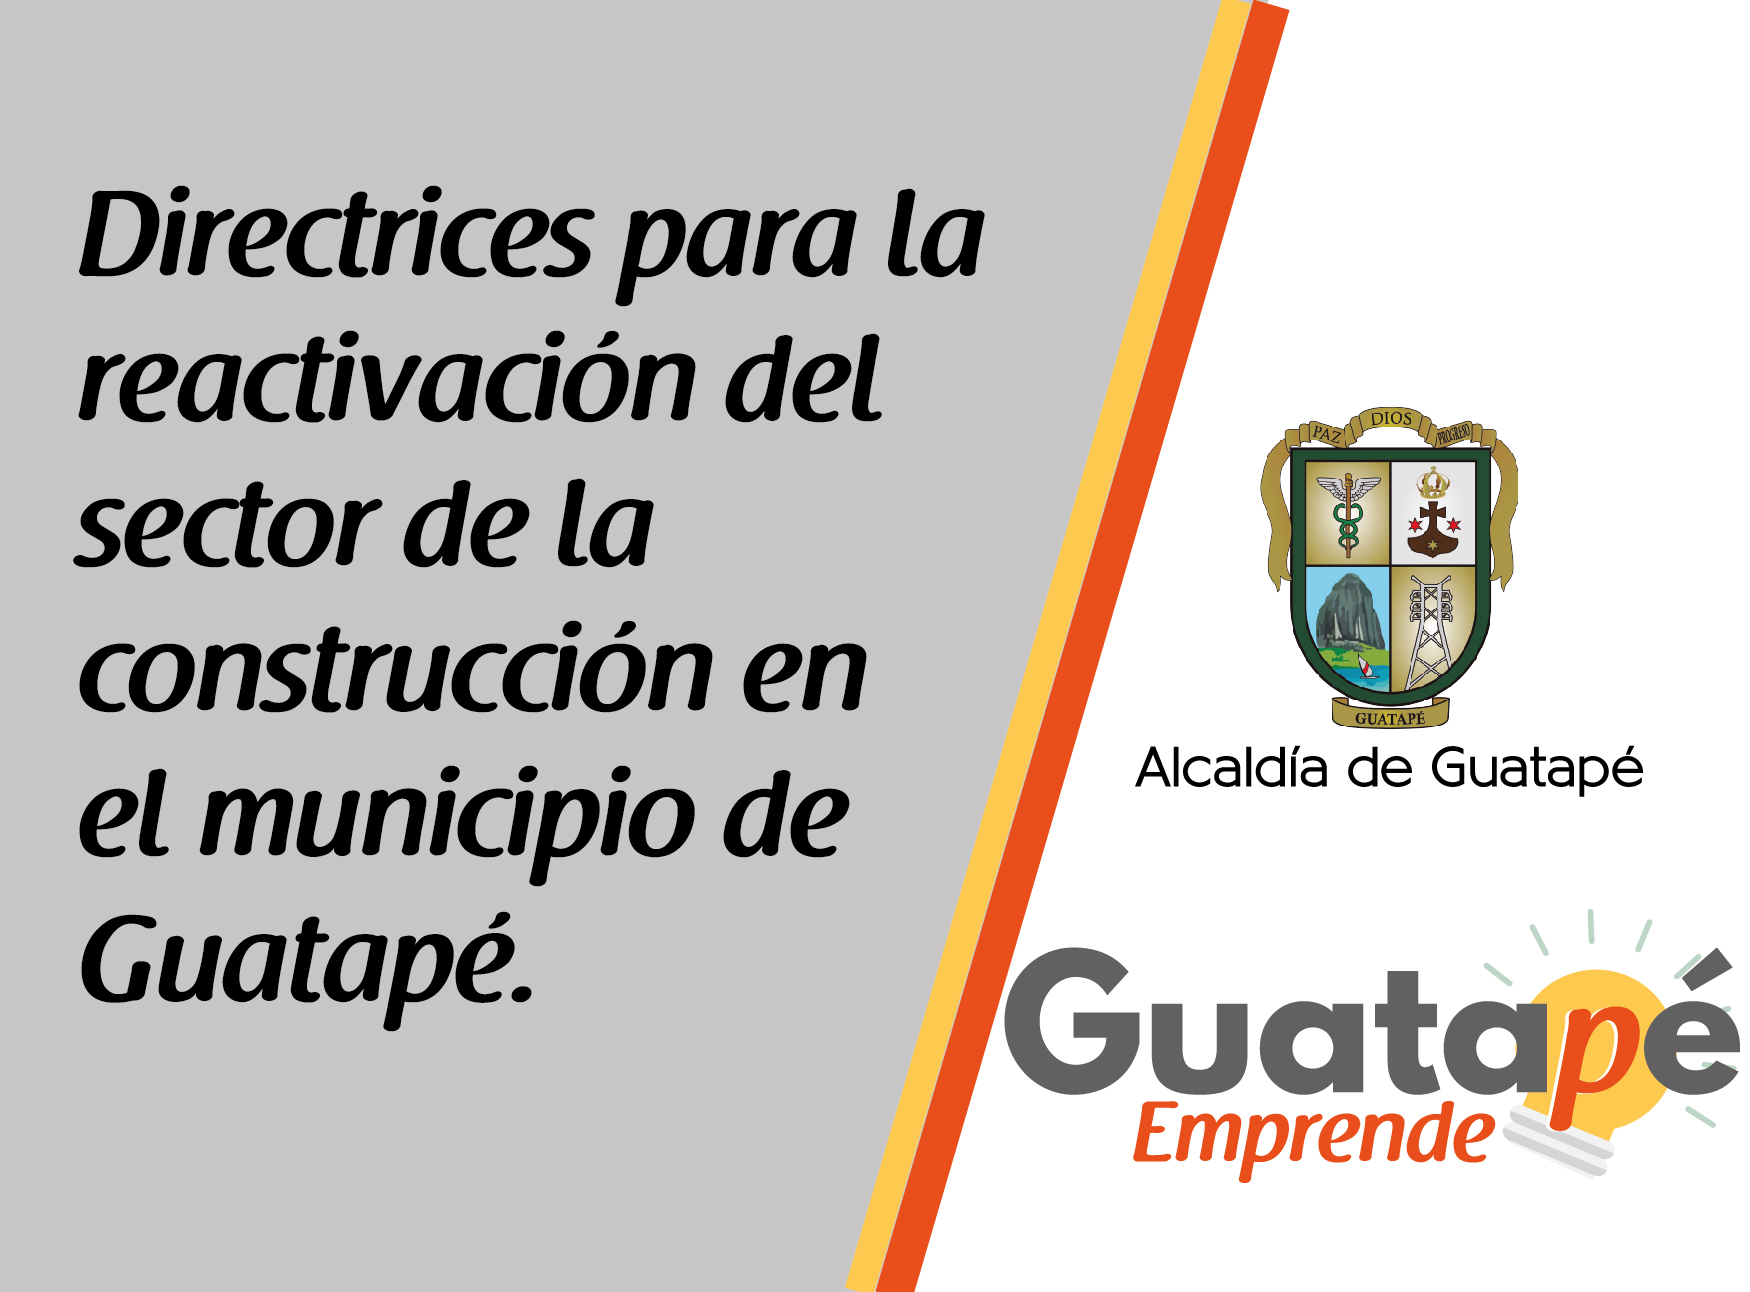 Directrices para la reactivación del sector de la construcción en el municipio de Guatapé.